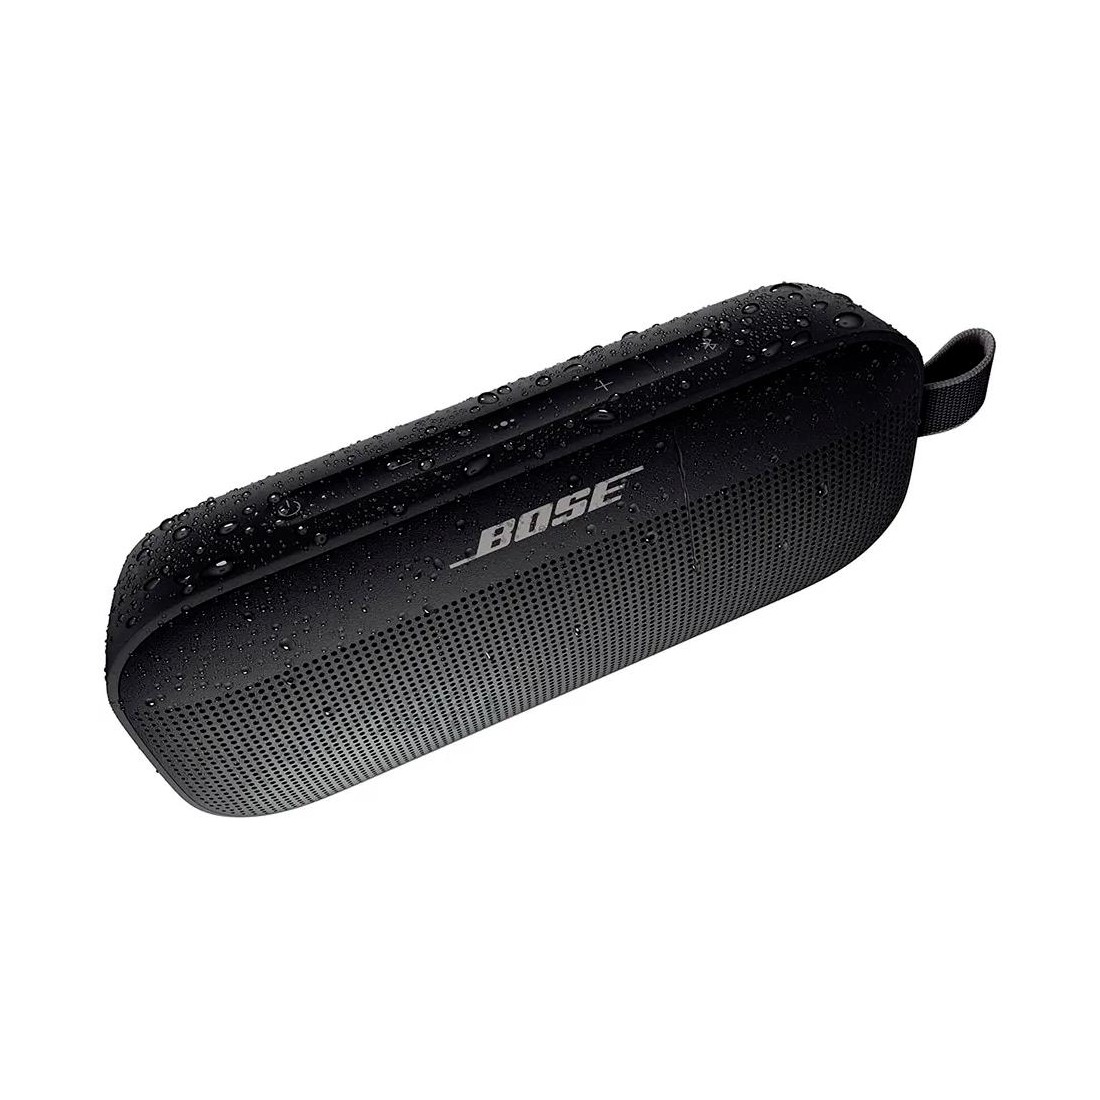 Altavoz Bose SoundLink Micro Bluetooth Color Smoke Conexión Bluetooth